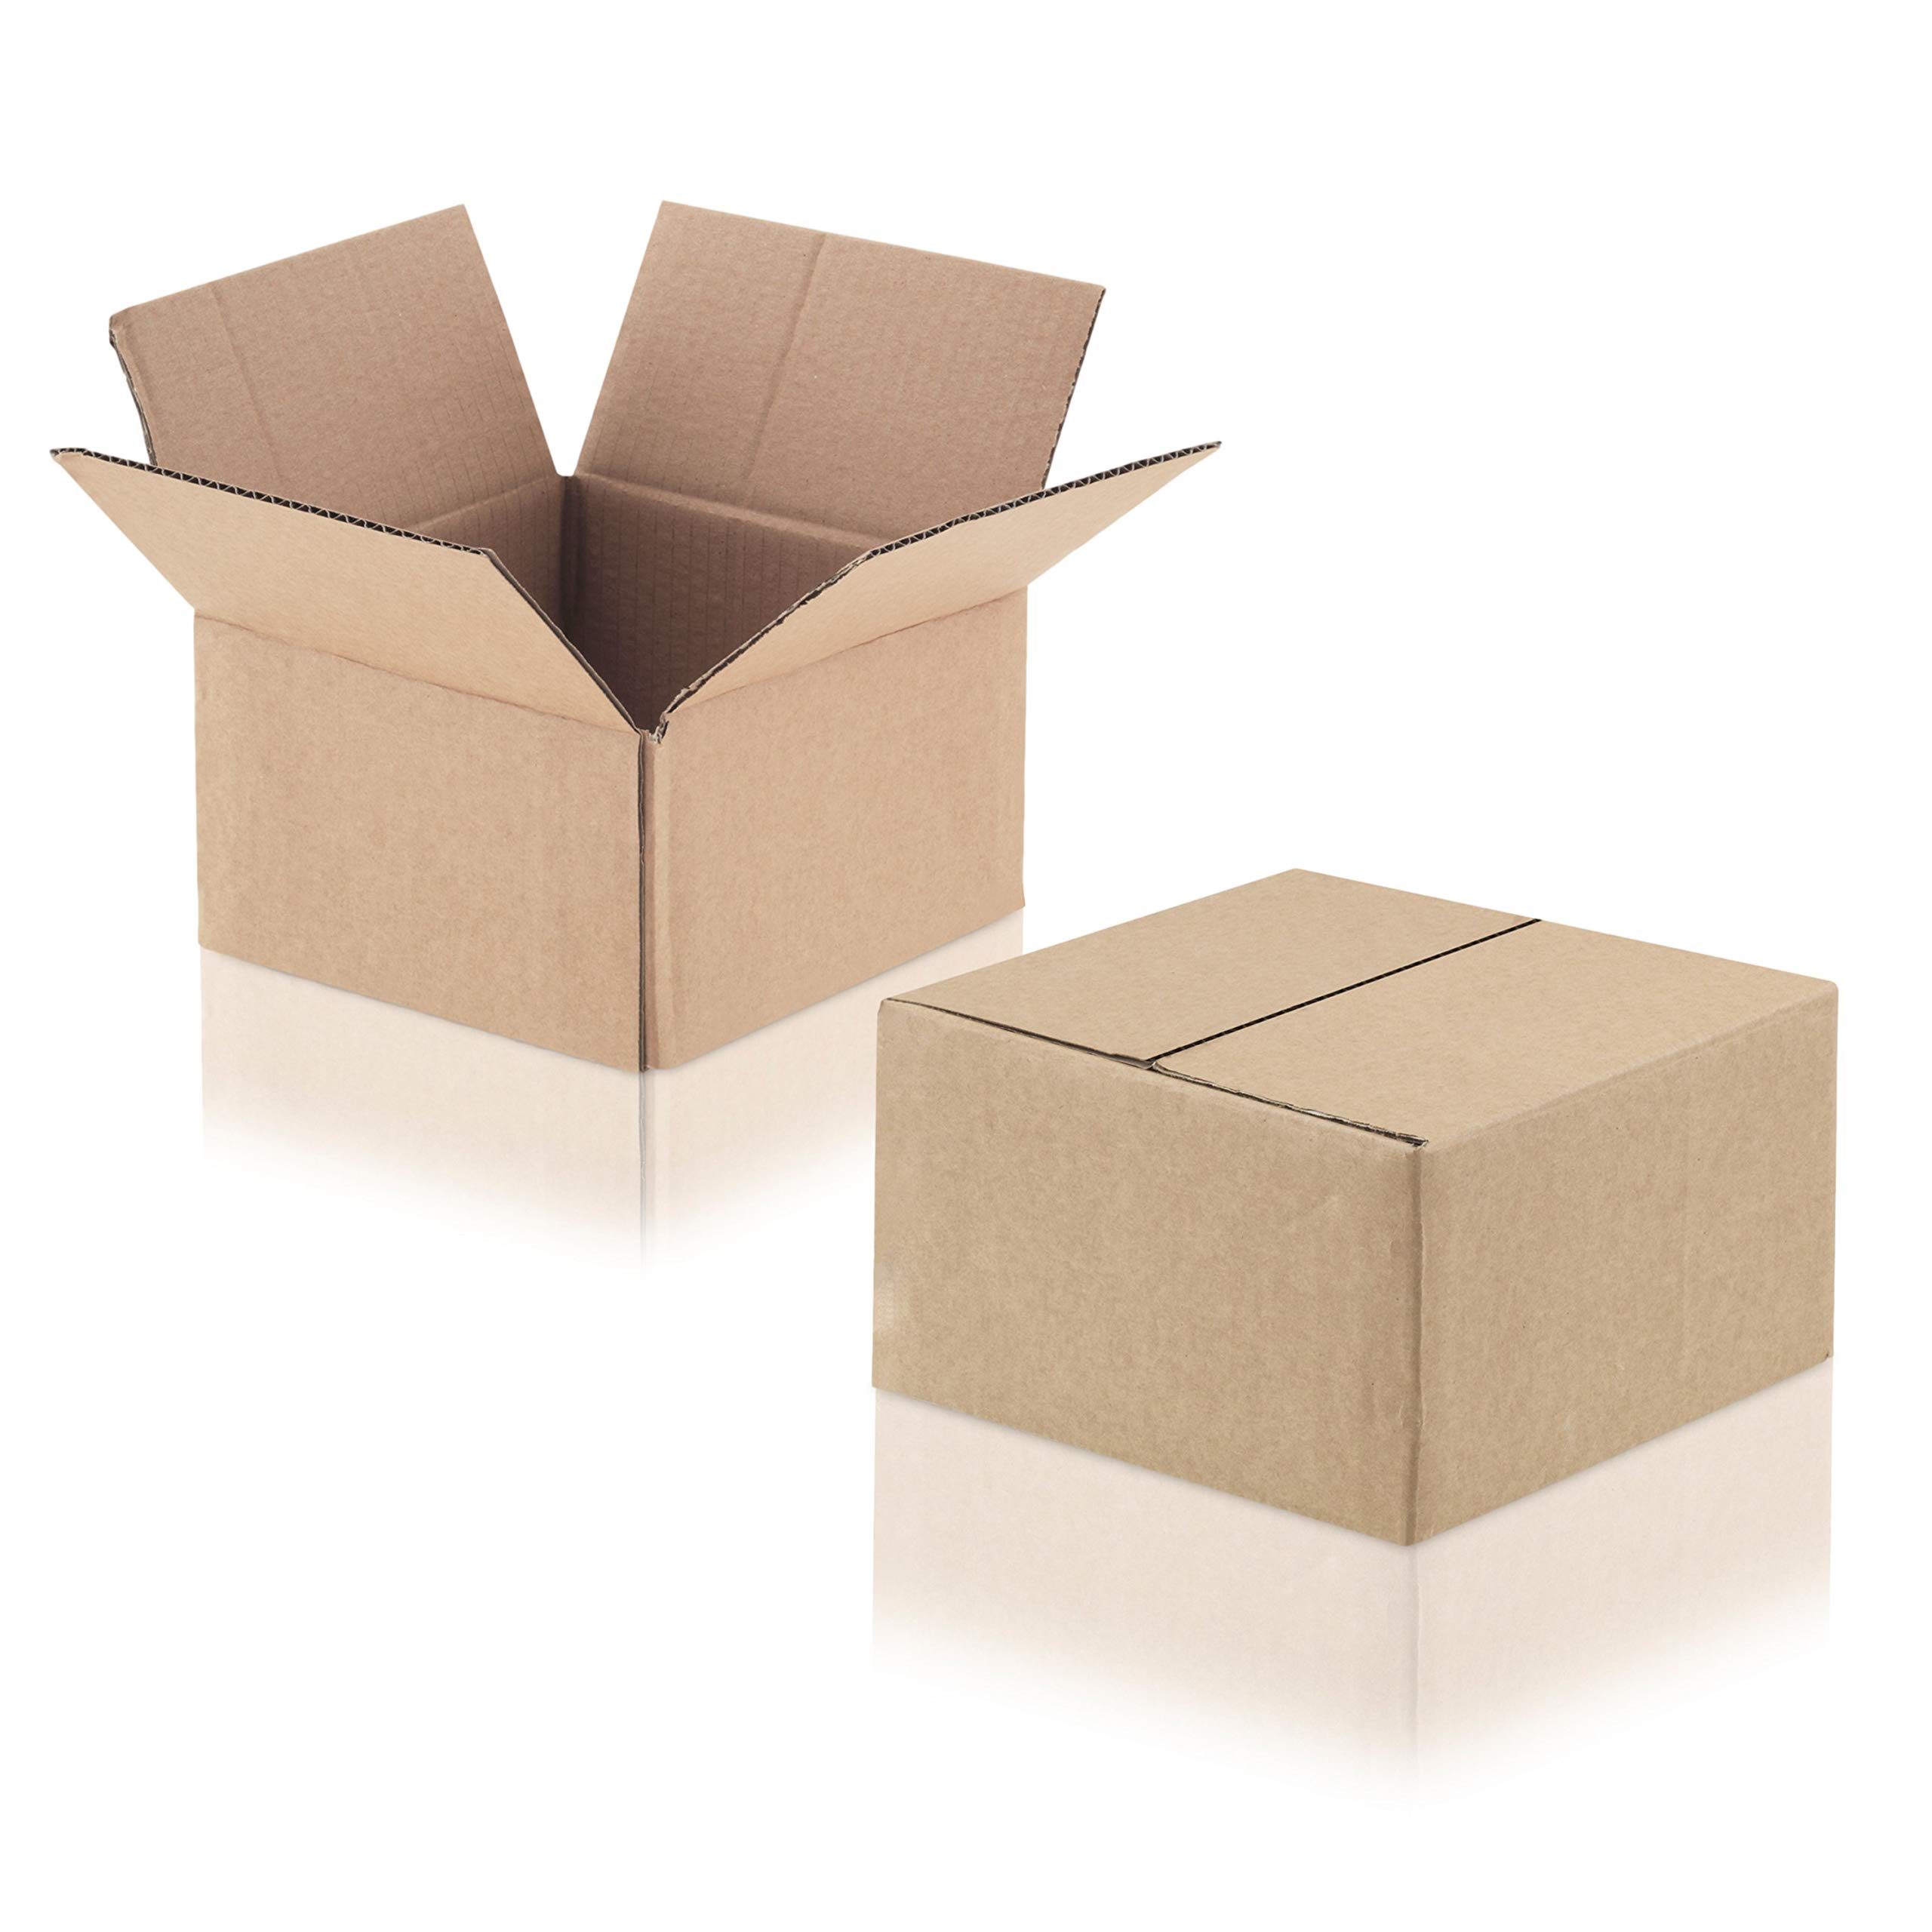 WPTrading - 50 Stück Versandkarton 1-wellig 300 x 250 x 100 mm aus Wellpappe (Nr. 31A) Braun - Pappe Faltkarton für Warenversendung, Paket & Päckchen klein (S) - Karton Versandverpackung extra stabil